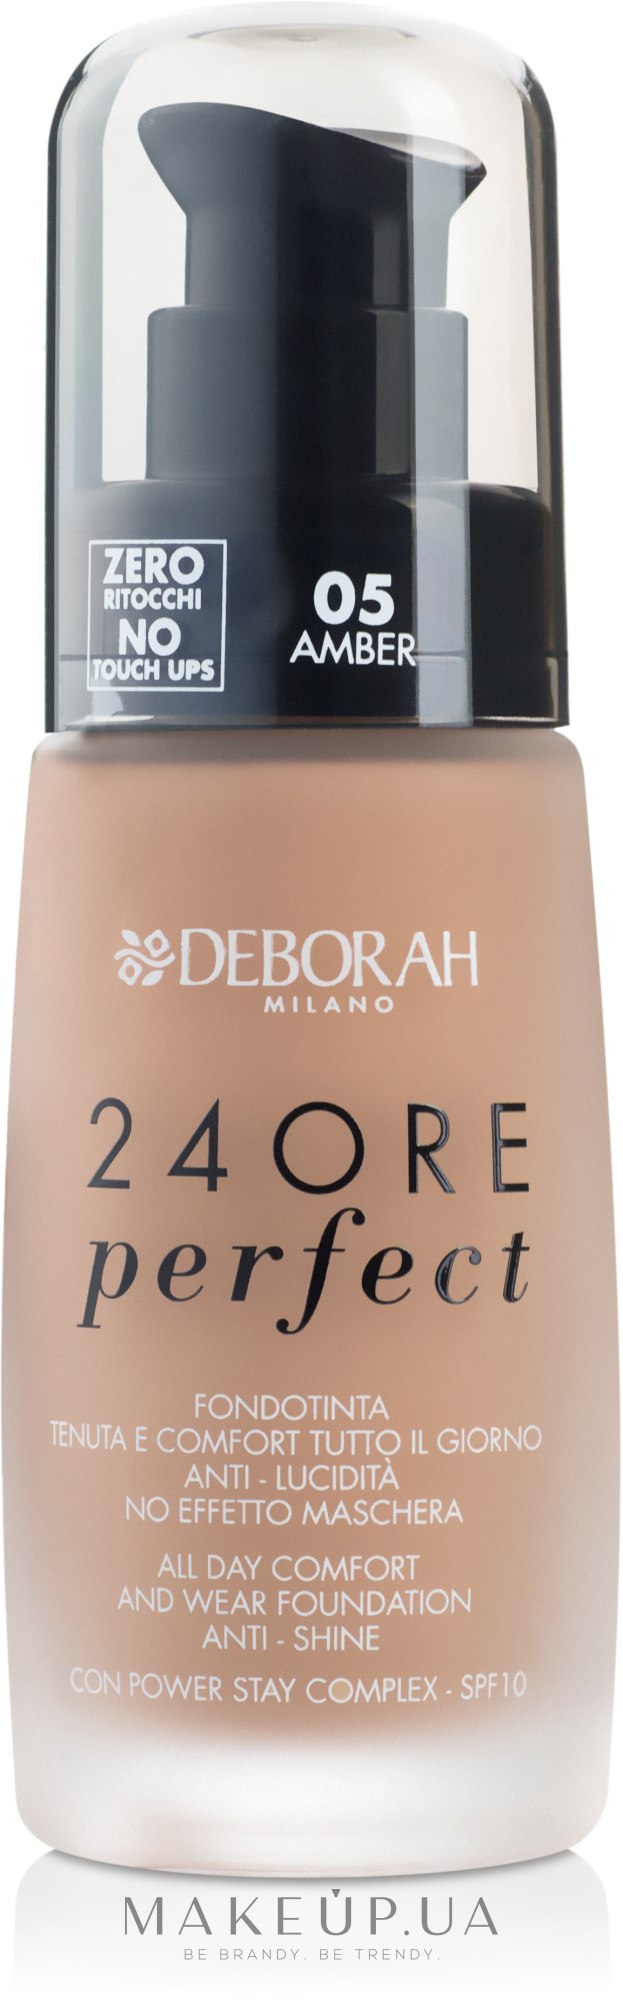 Deborah 24Ore Perfect Foundation - Тональная основа для 